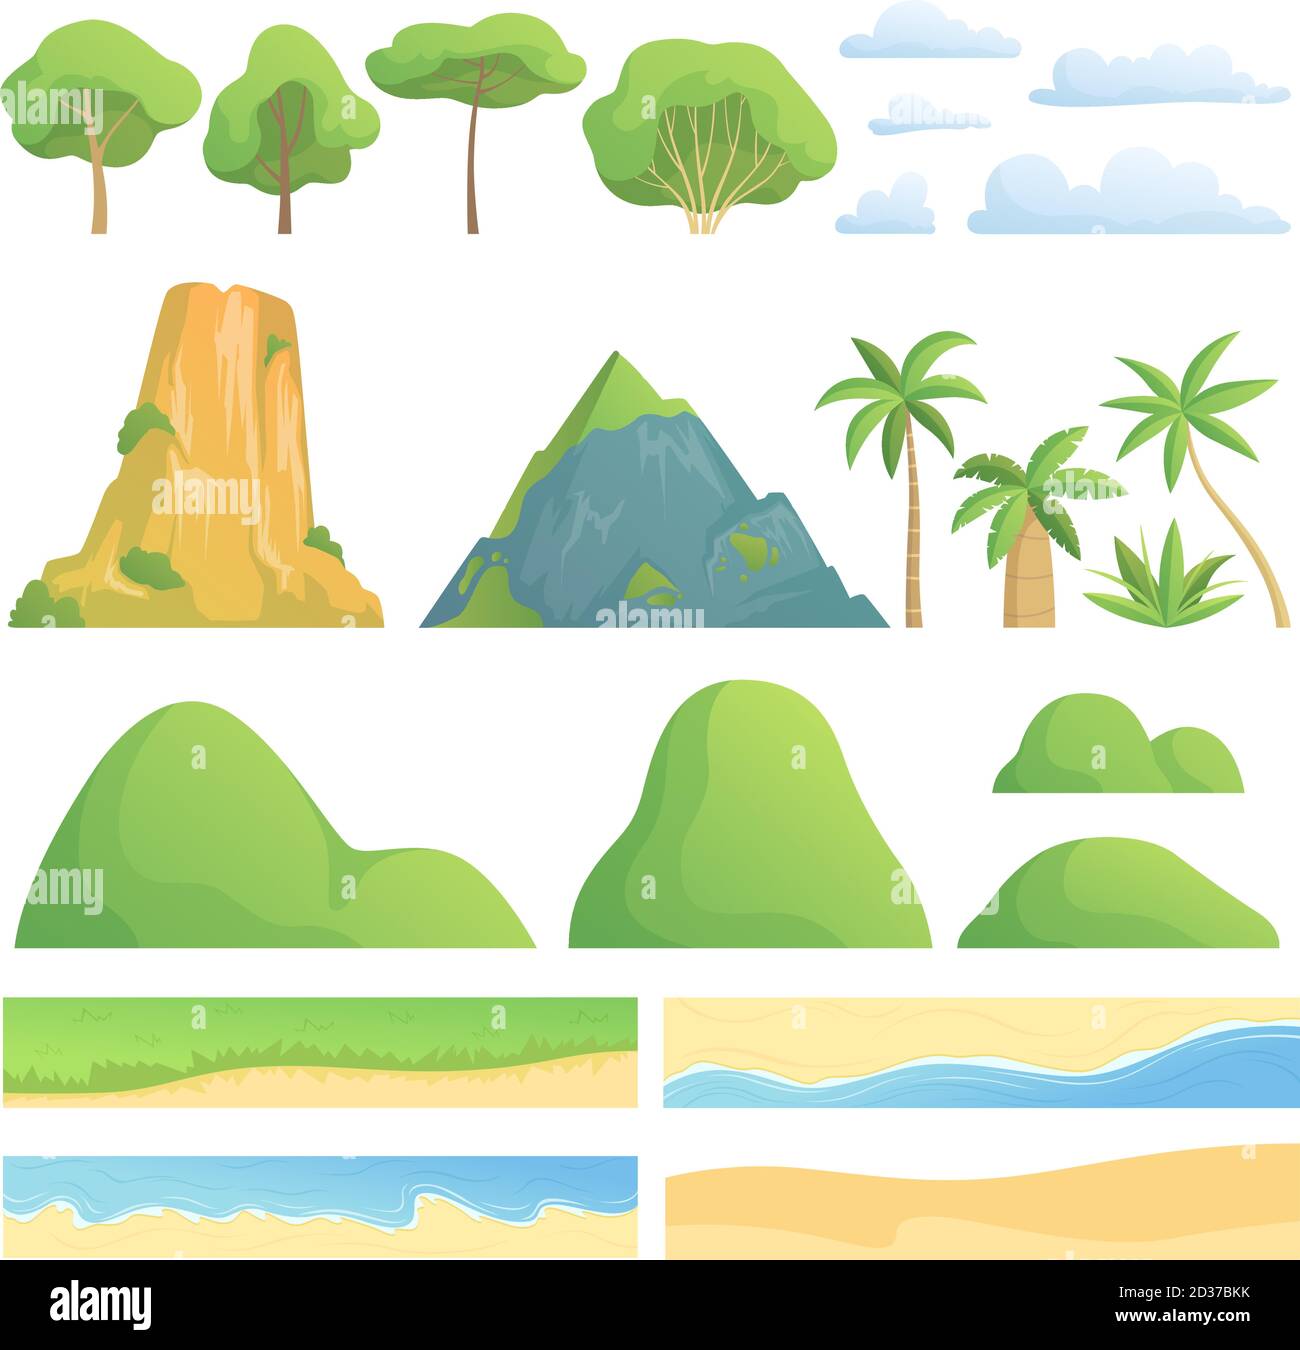 Landschaftskonstruktor. Kreation Kit mit Bäumen Sträucher Berge Hügel Wolken Küste Sand und Gras Vektor Cartoon Sammlung Stock Vektor